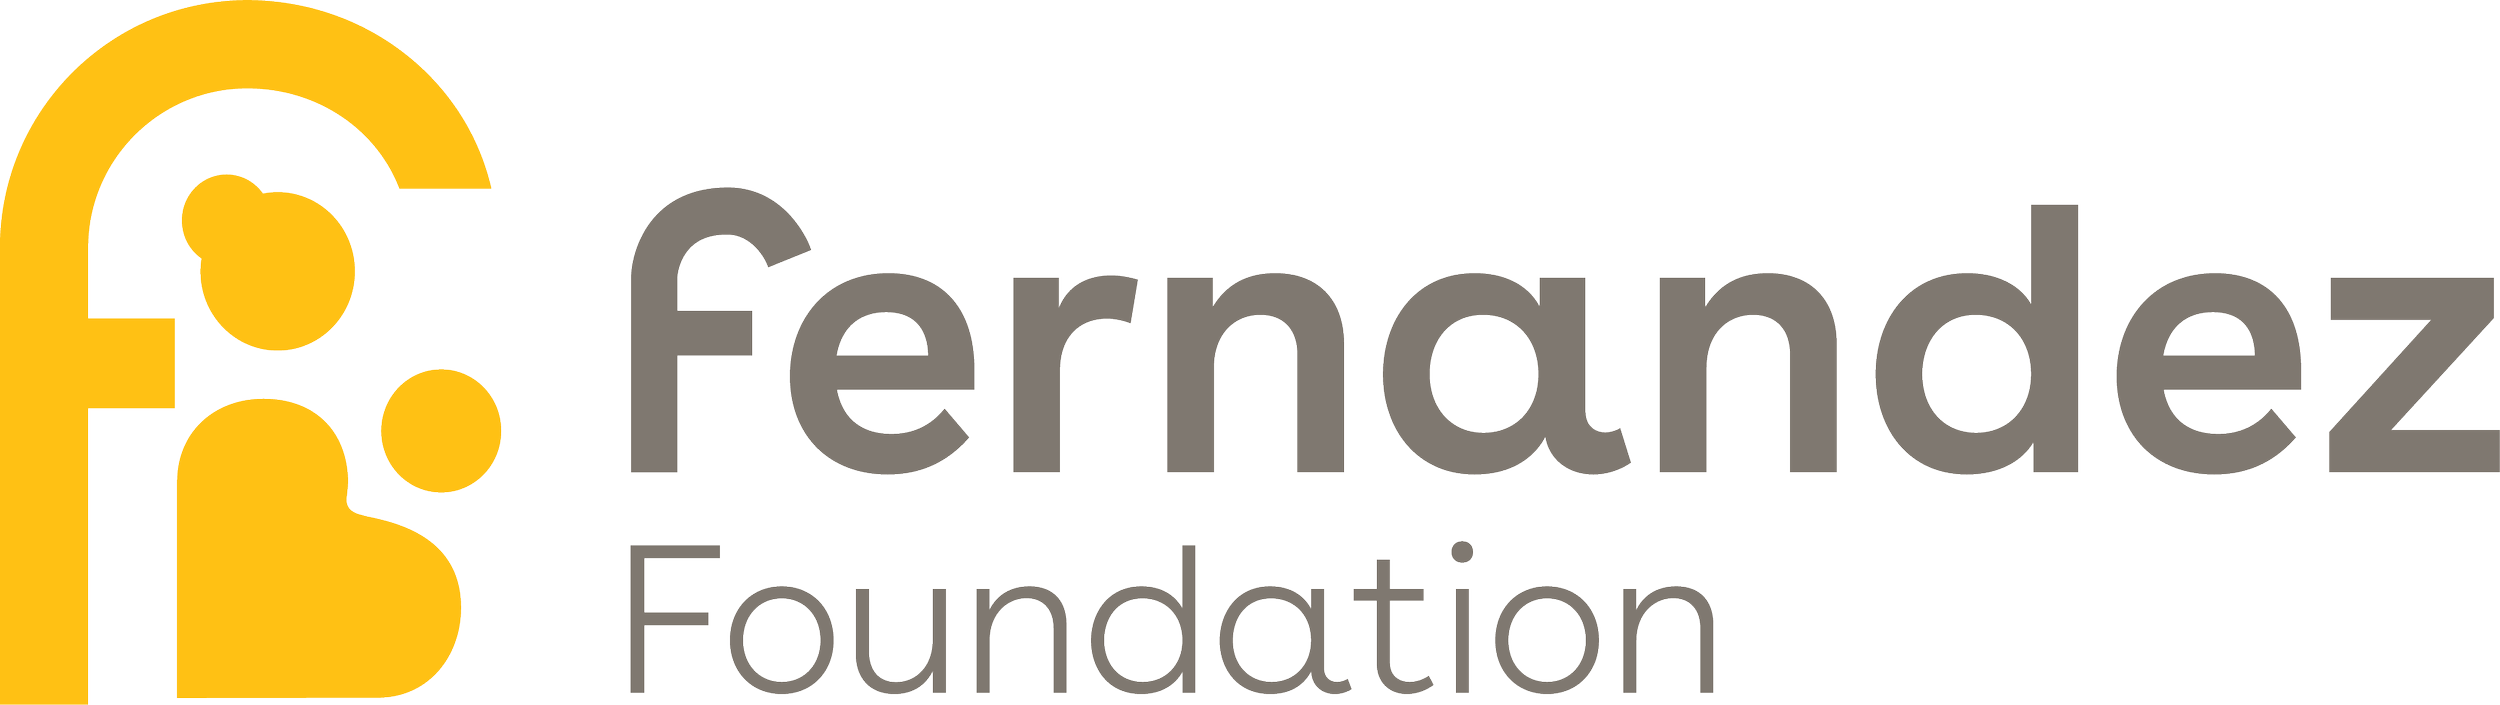 Fernandez Foundation_logo.png